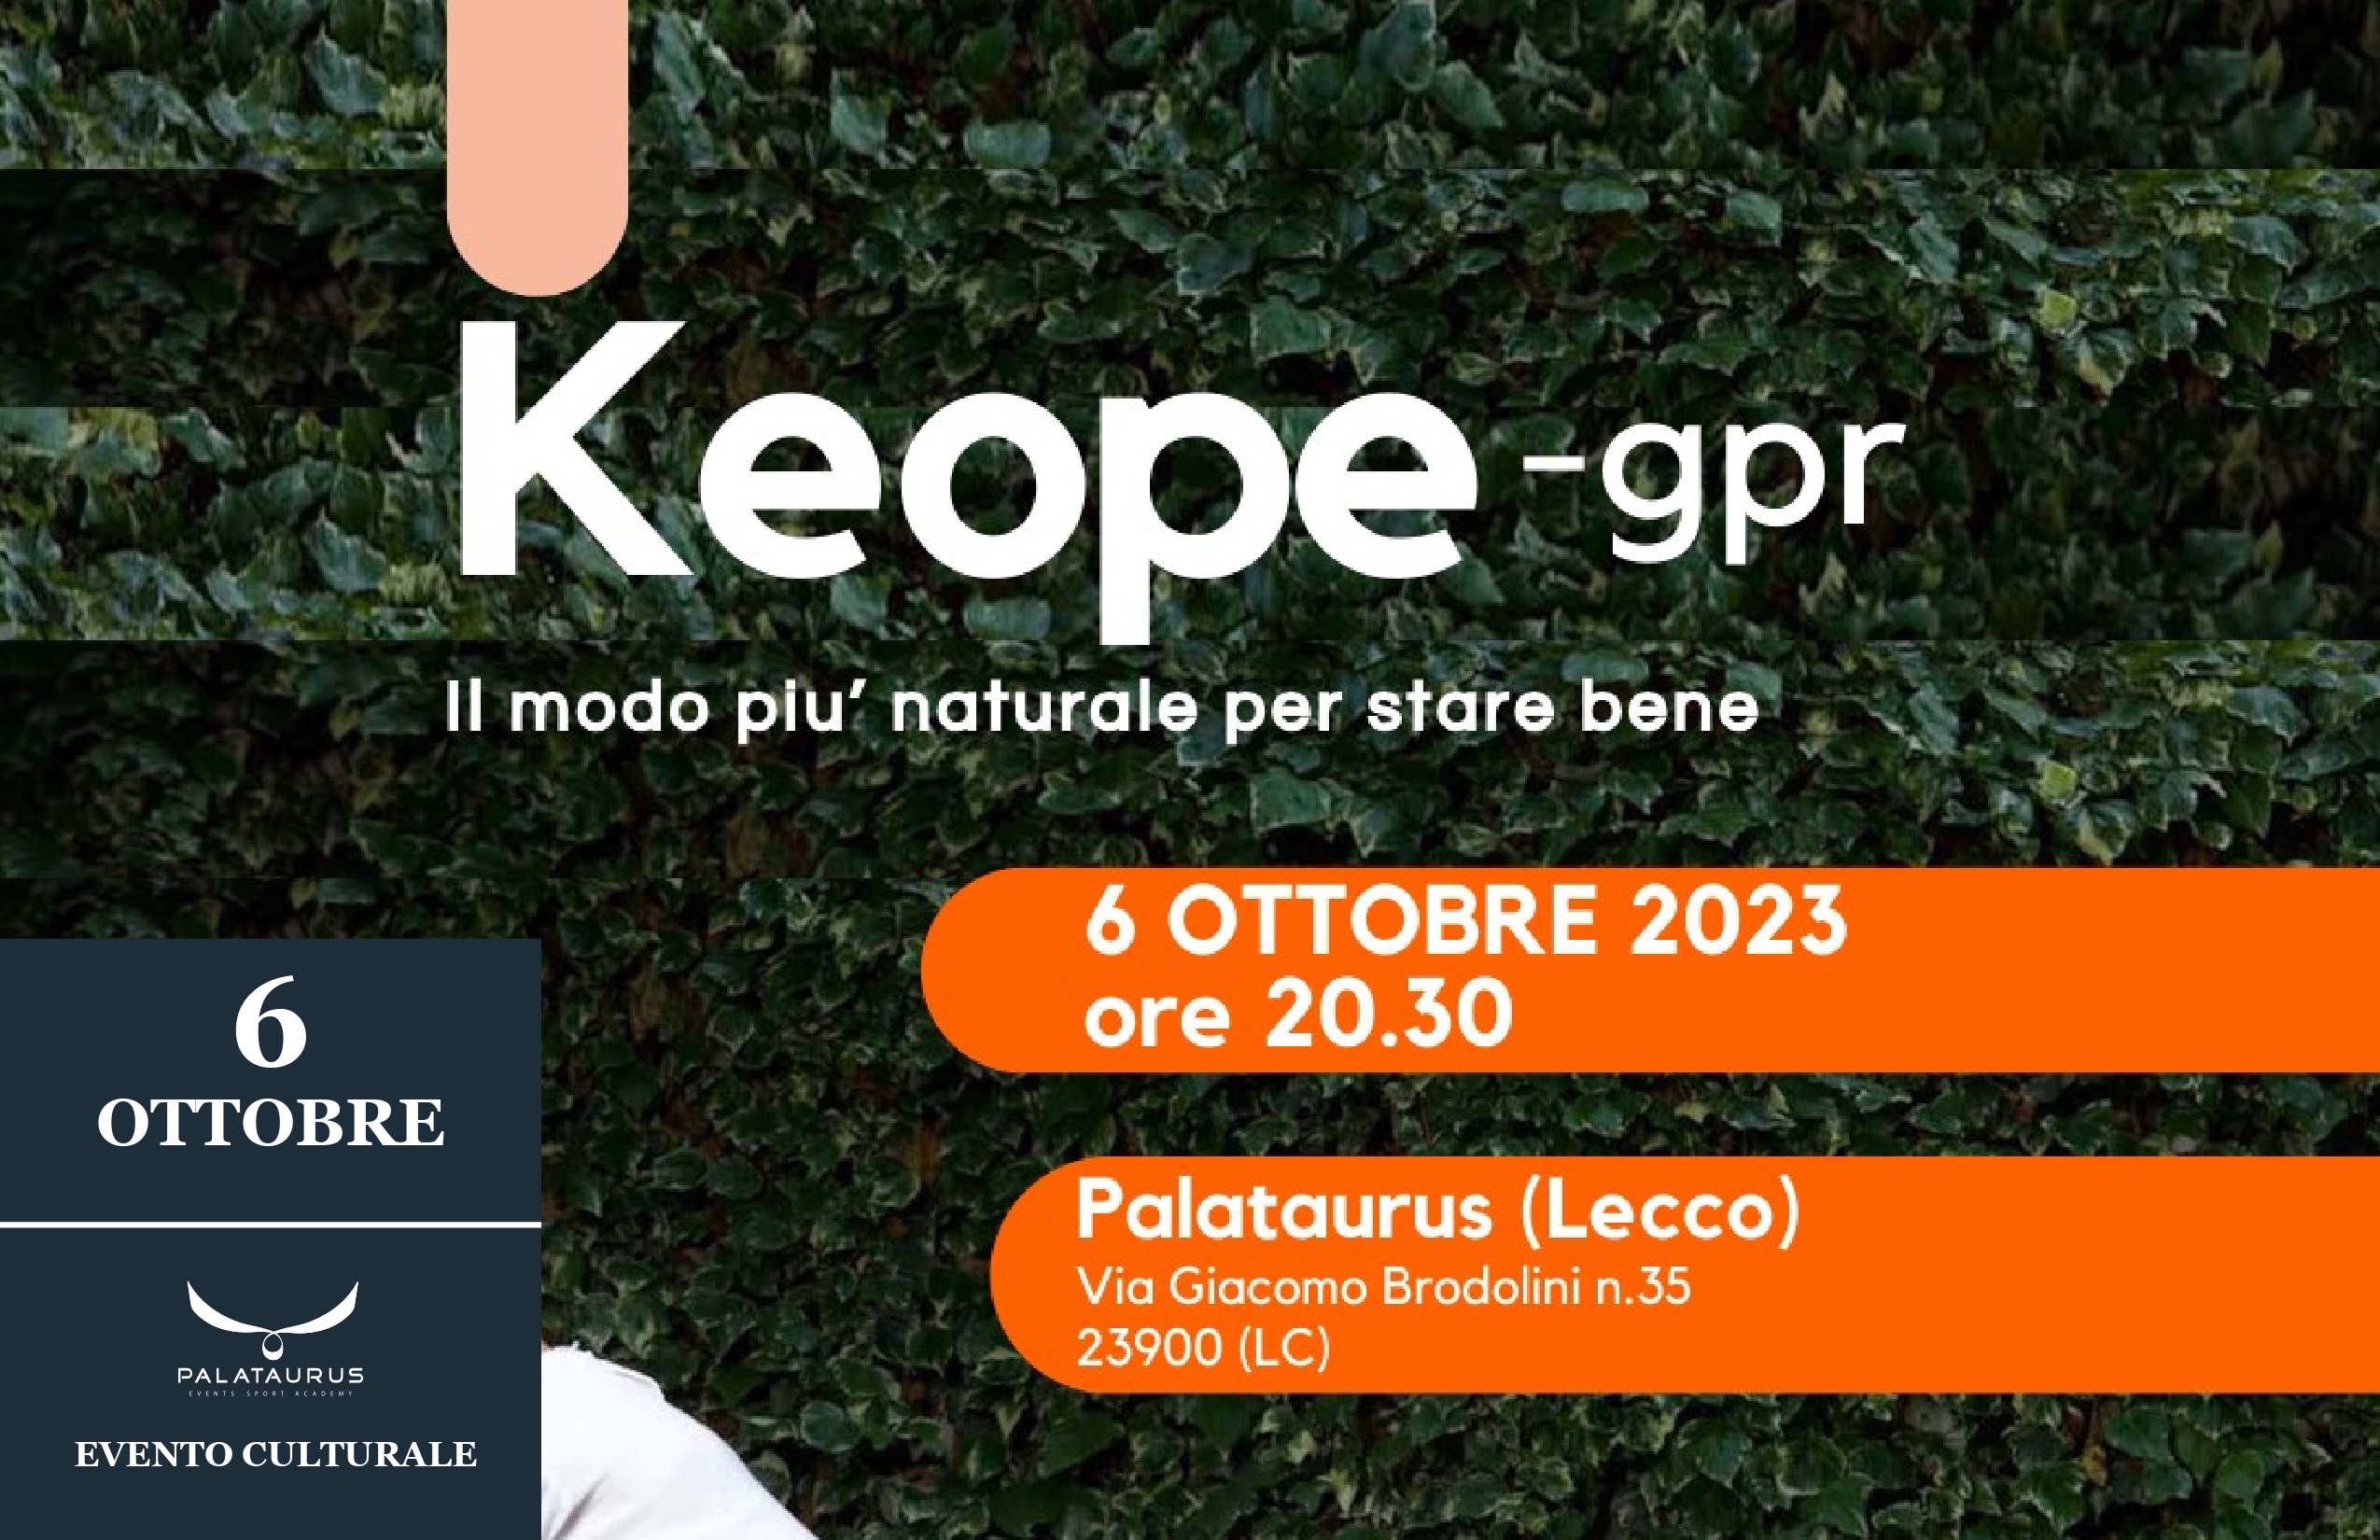 KEOPE-GPR